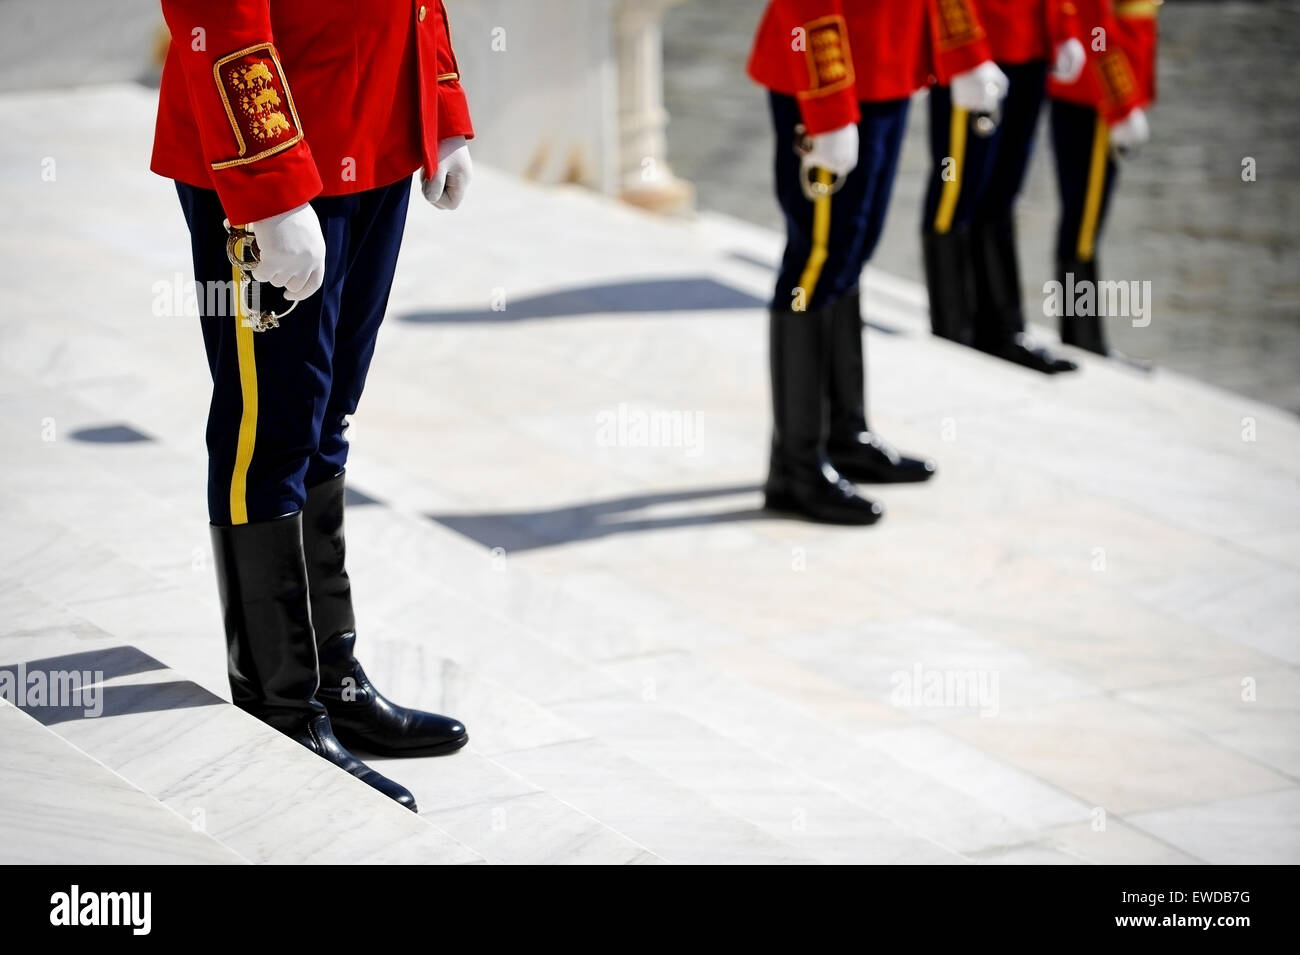 Les gardes d'honneur militaire avec des épées sur des escaliers en marbre Banque D'Images